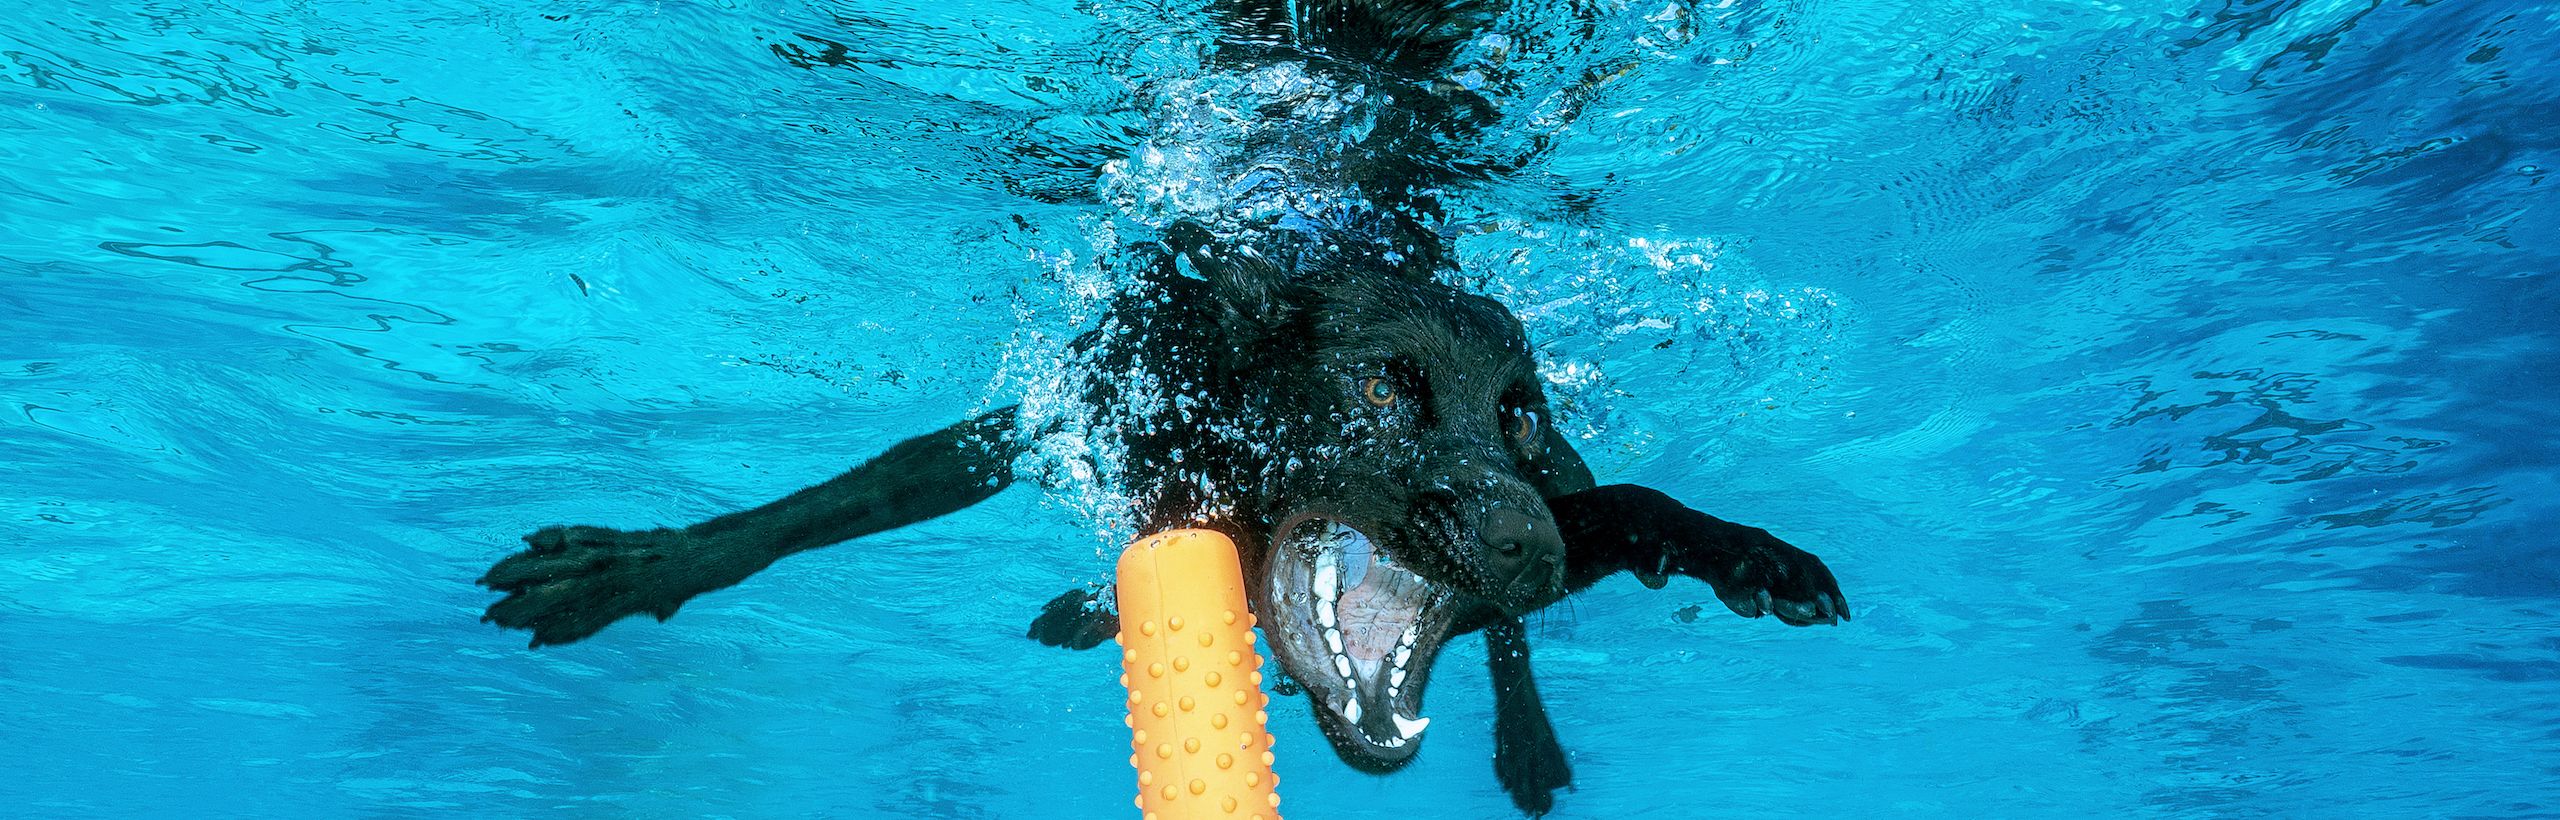 Unterwasser Fotos von Hunden